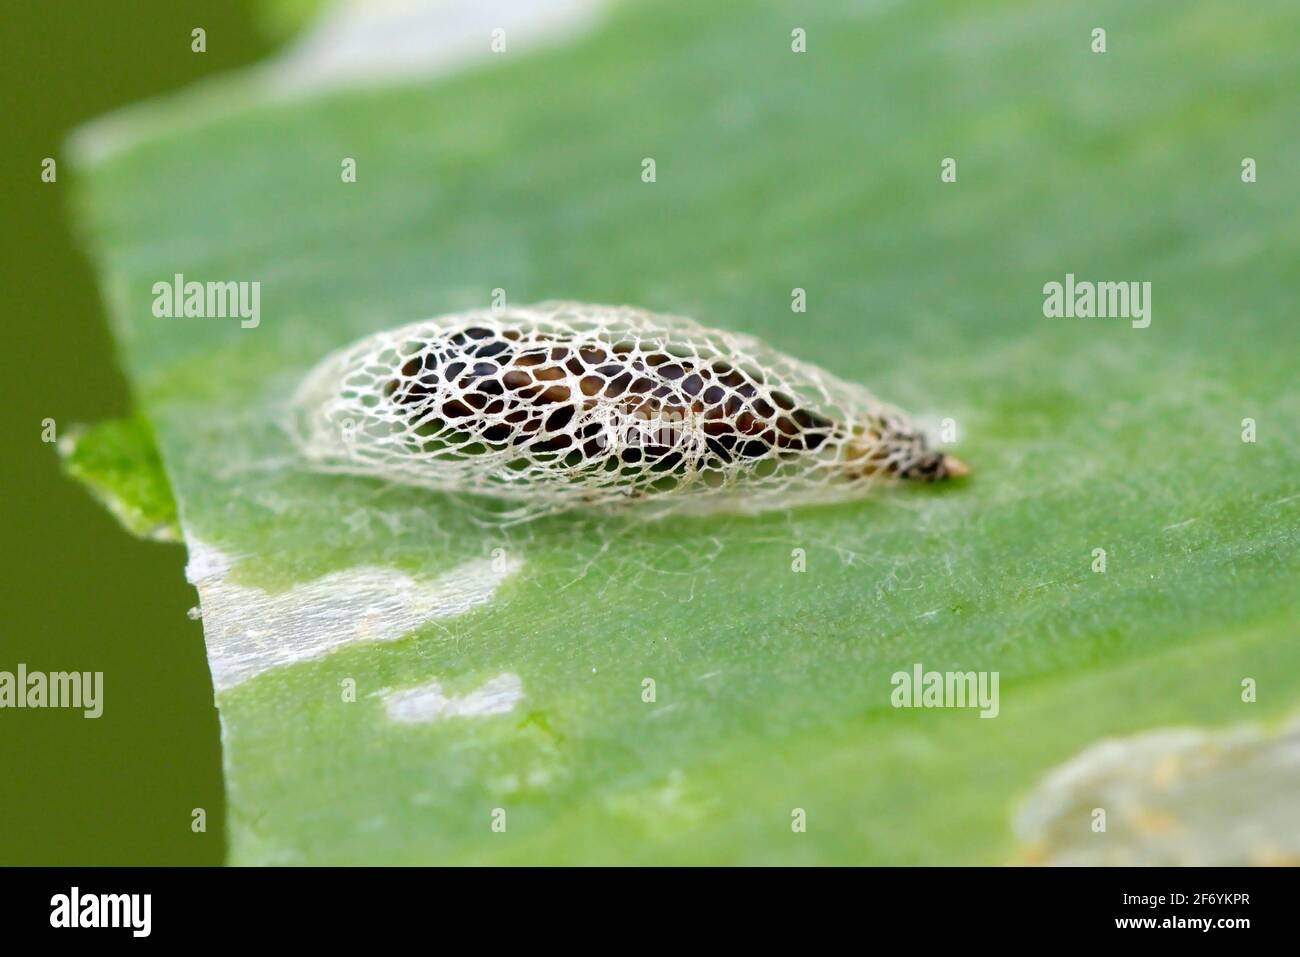 Pupa of leek moth or onion leaf miner (Acrolepiopsis assectella) family Acrolepiidae. It is Invasive speciesa pest of leek crops. Larvae feed on Alliu Stock Photo